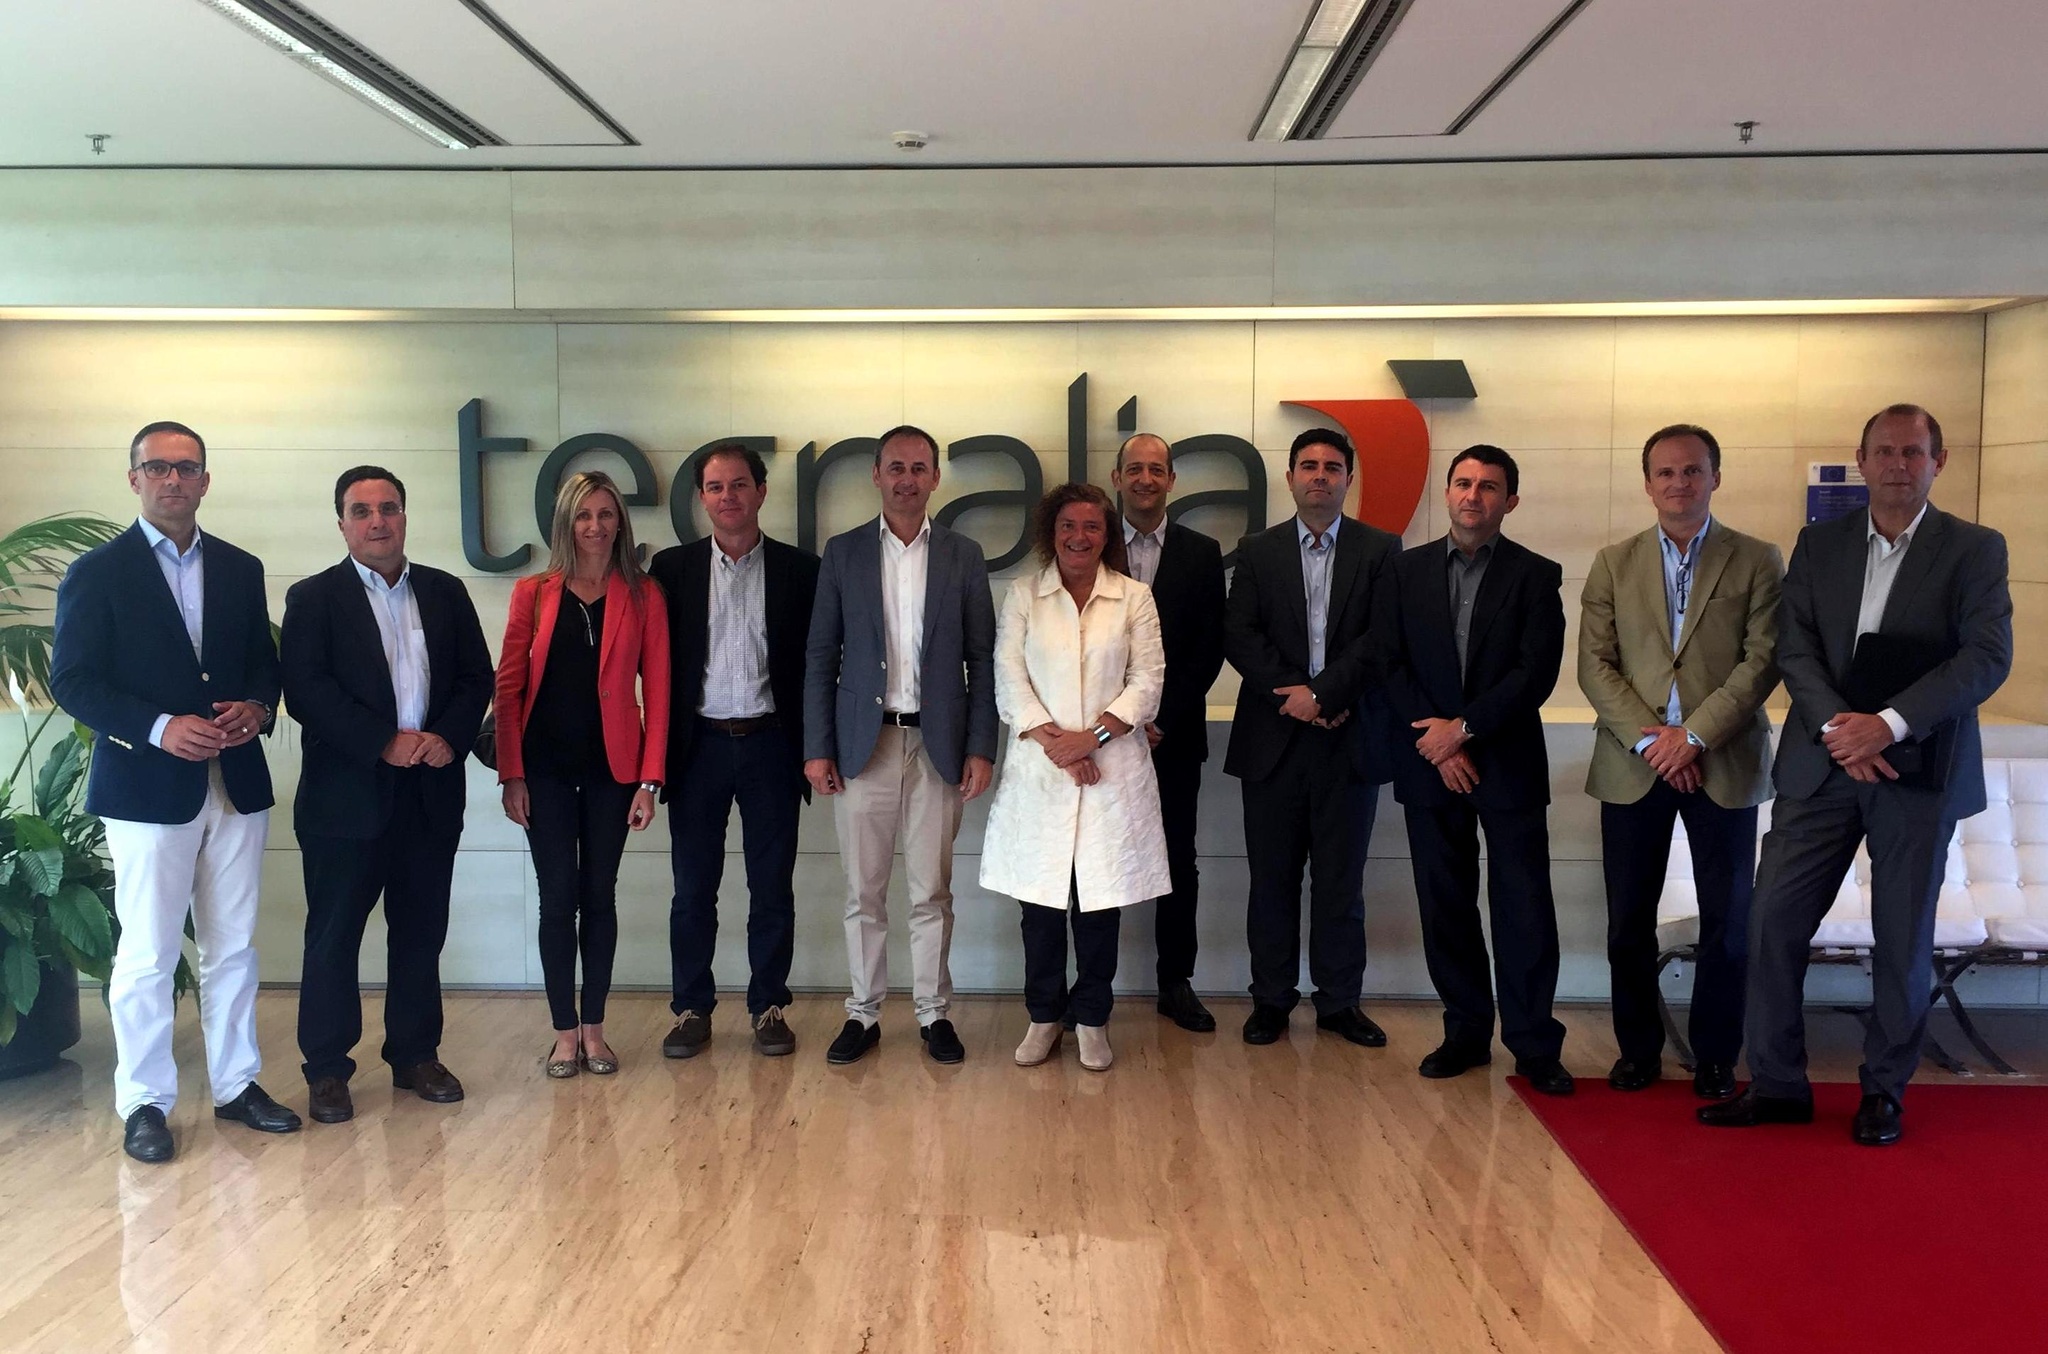 El director del Instituto de Fomento, Javier Celdrán, y los representantes de los centros tecnológicos de la Región conocen la corporación tecnológica Tecnalia en el País Vasco